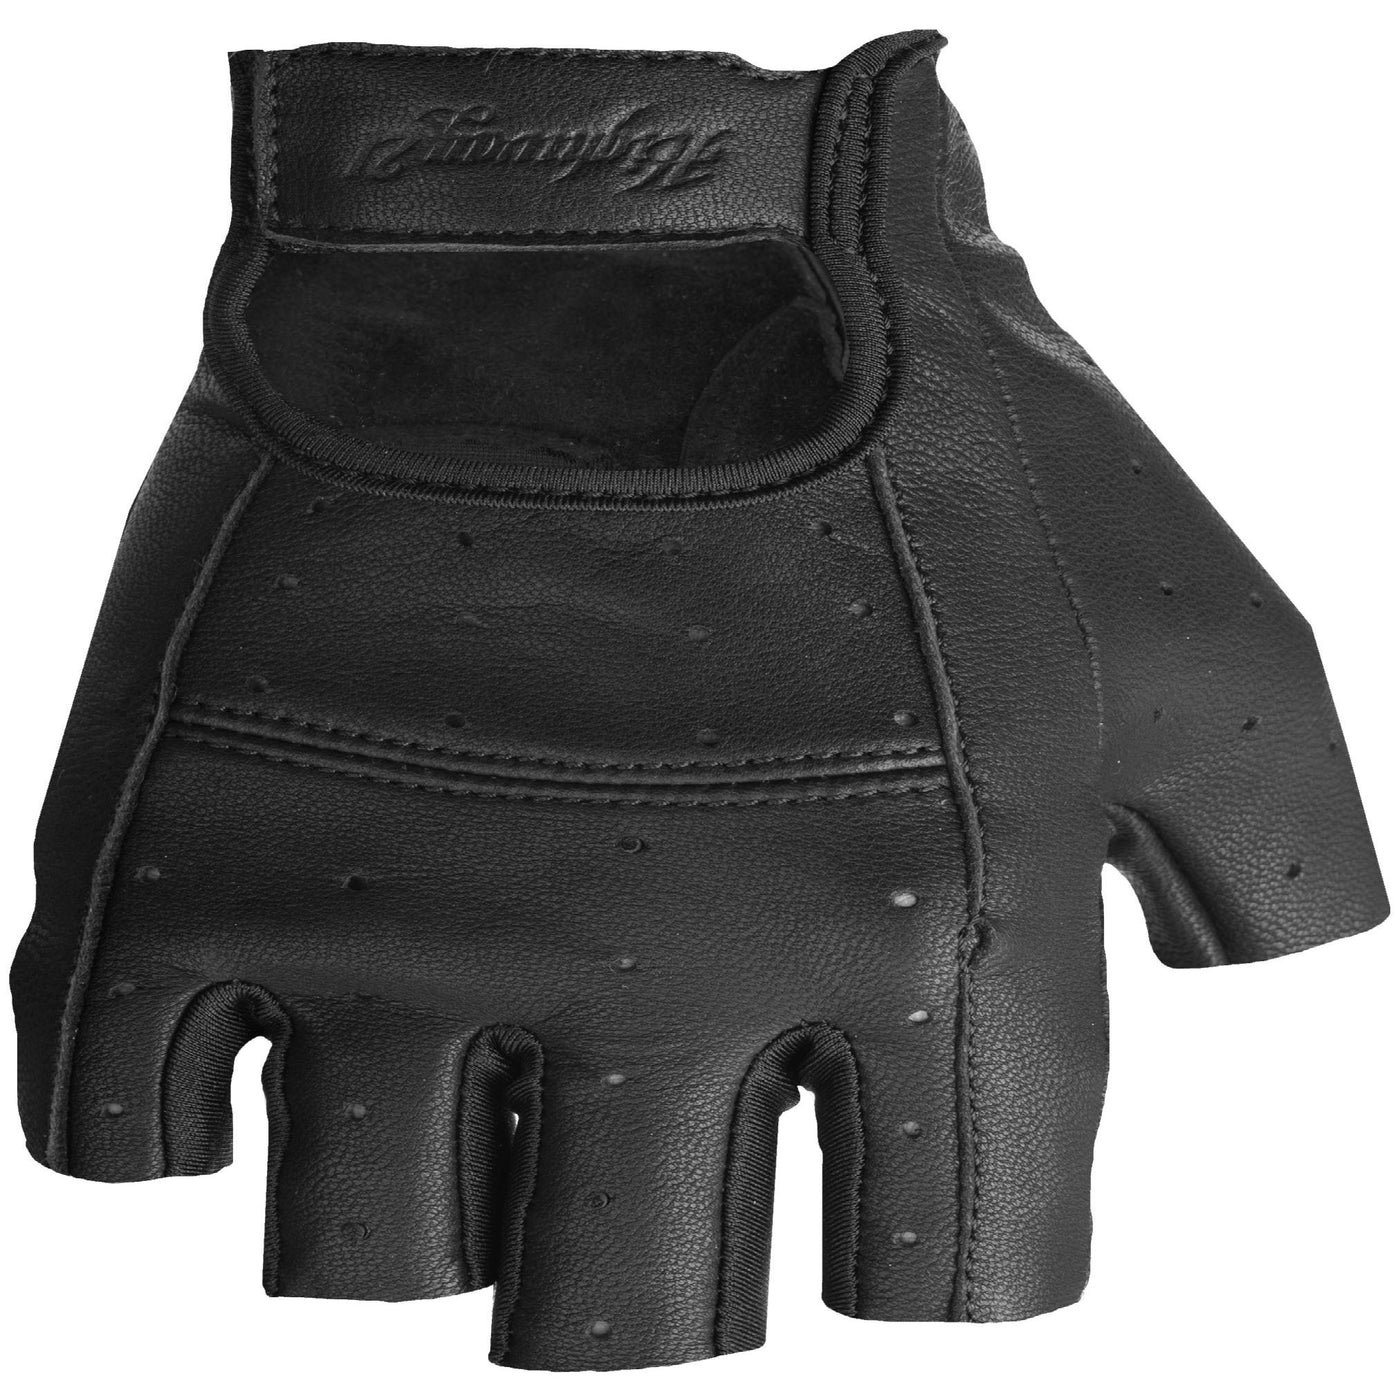 Women's Ranger Gloves Black Xl